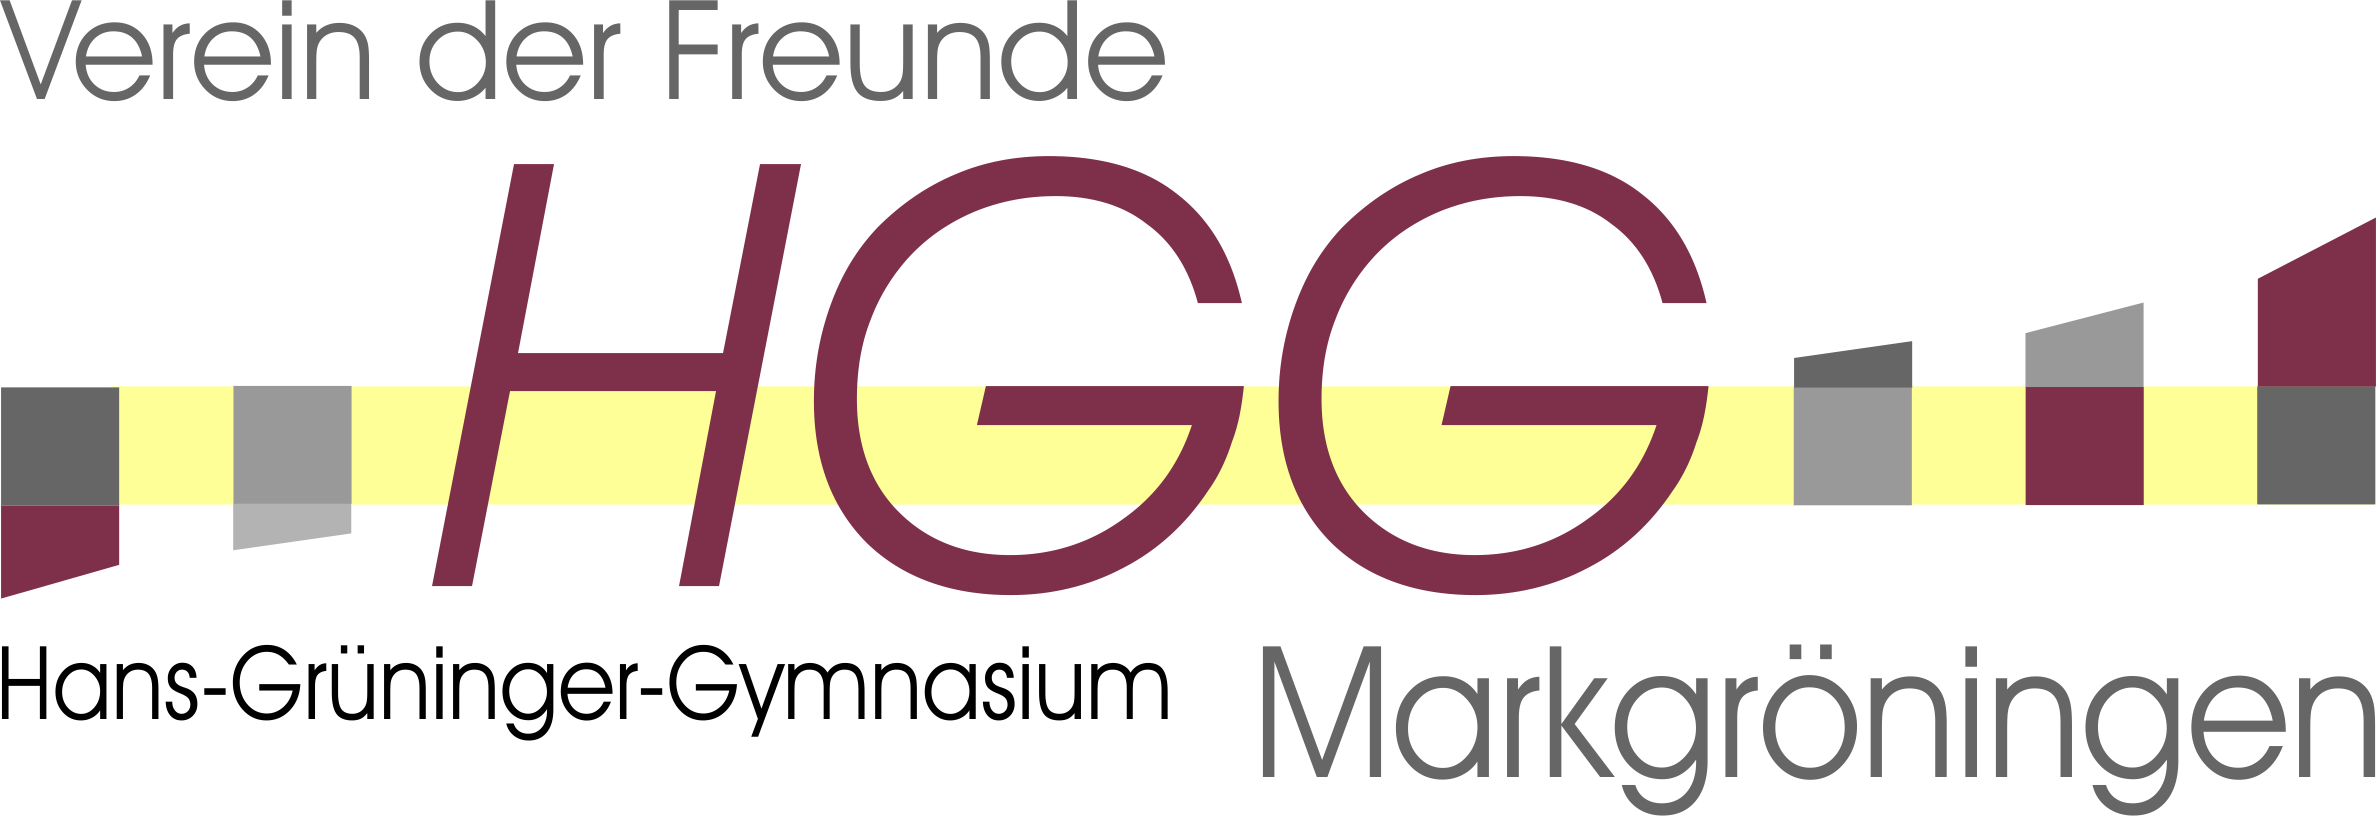 HGG-Verein_Logo_ohneHintergrund